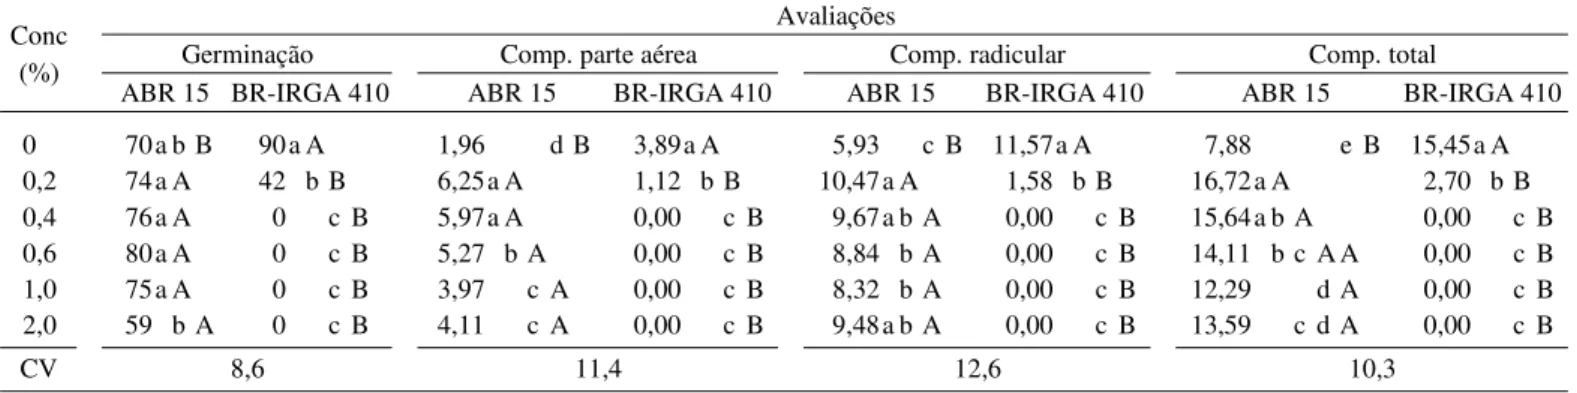 TABELA 4. Dados médios de germinação (%), comprimentos (cm) da parte aérea, do sistema radicular e total das plântulas de arroz linhagem geneticamente modificada ABR 15 e cultivar parental BR-IRGA 410, após embebição das sementes em solução de diferentes c